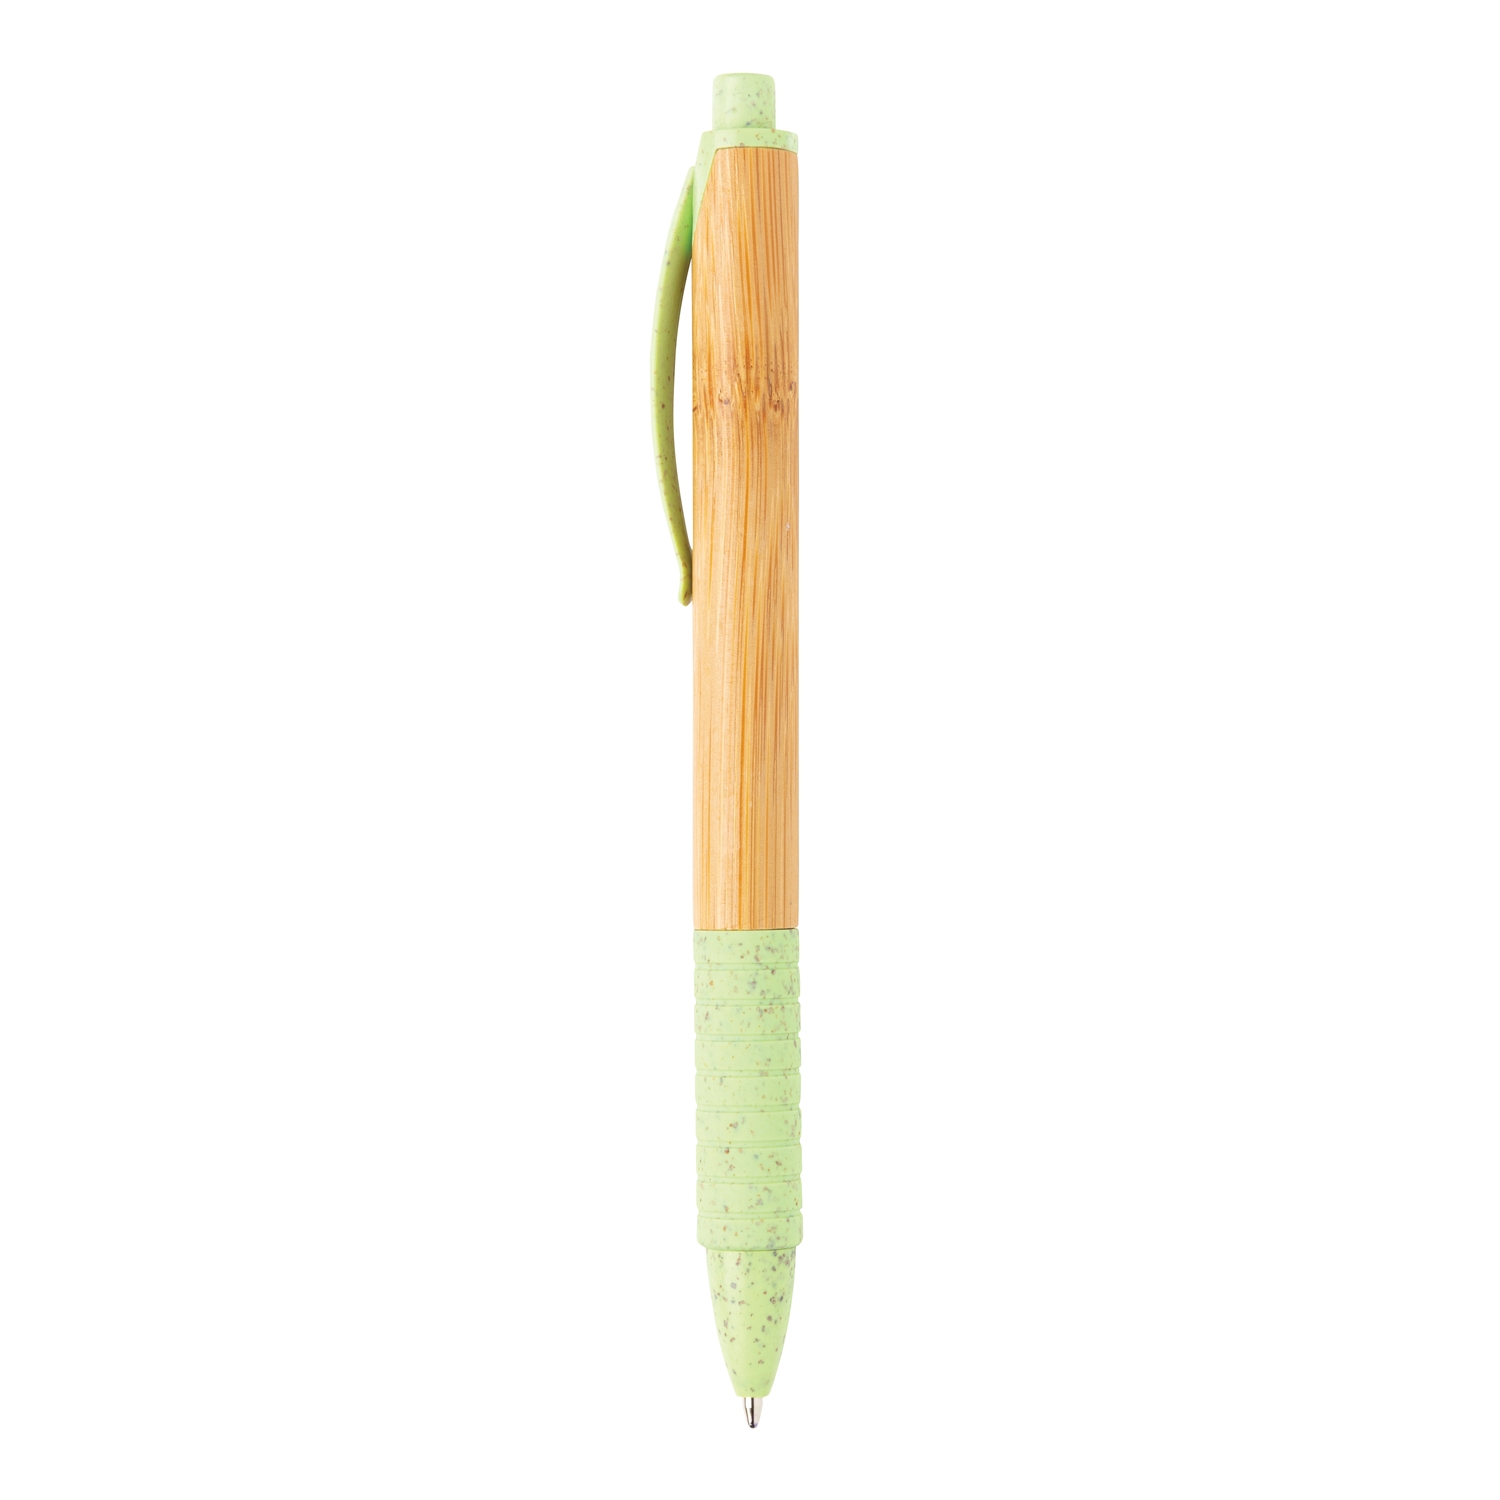 Ручка из бамбука и пшеничной соломы, зеленый, бамбук; волокно пшеничной соломы